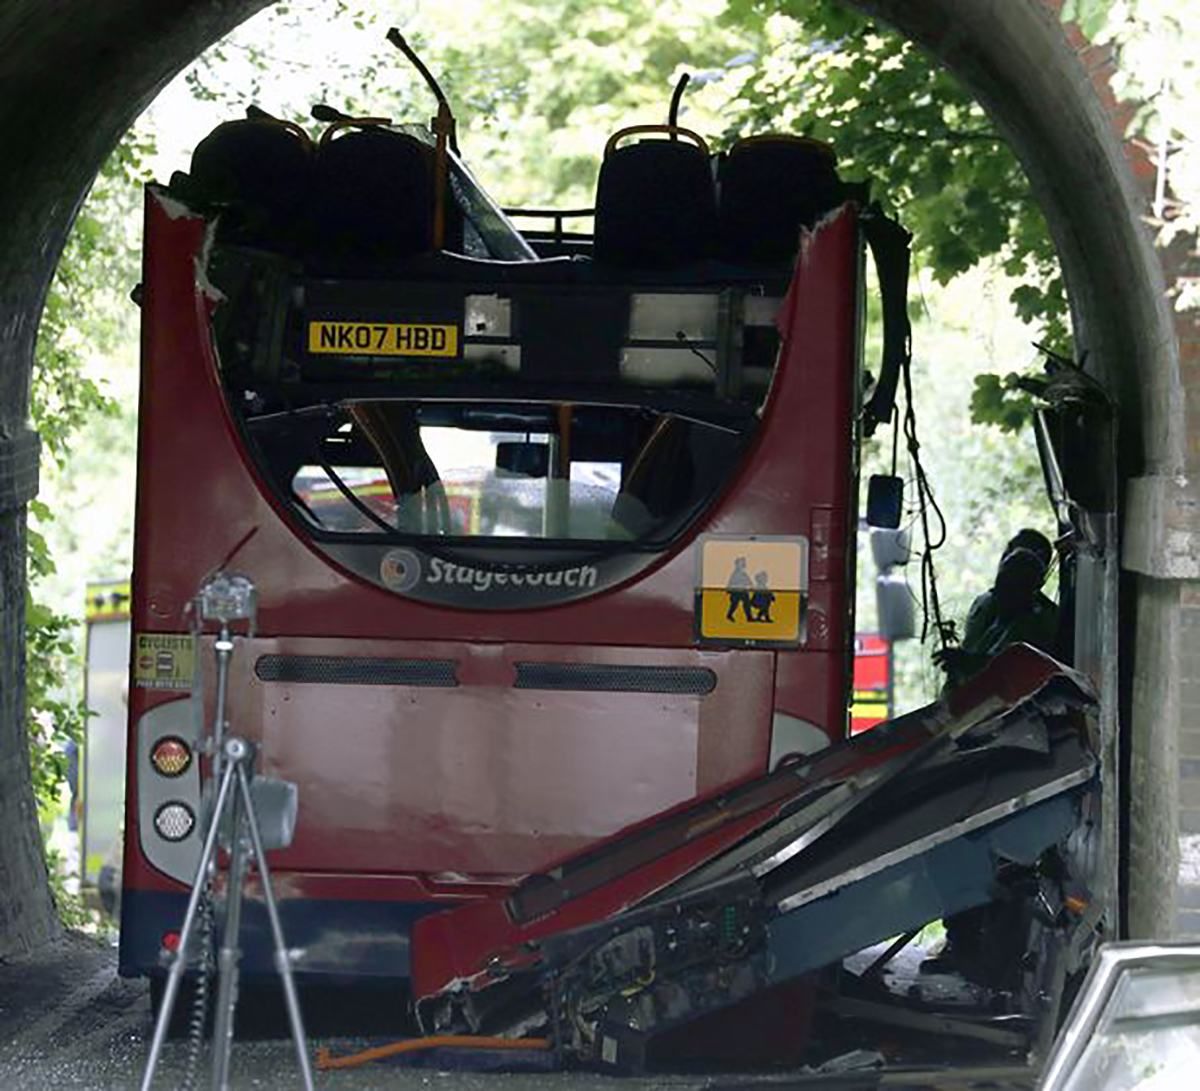 15 детей пострадали в ДТП со школьным автобусом в Великобритании